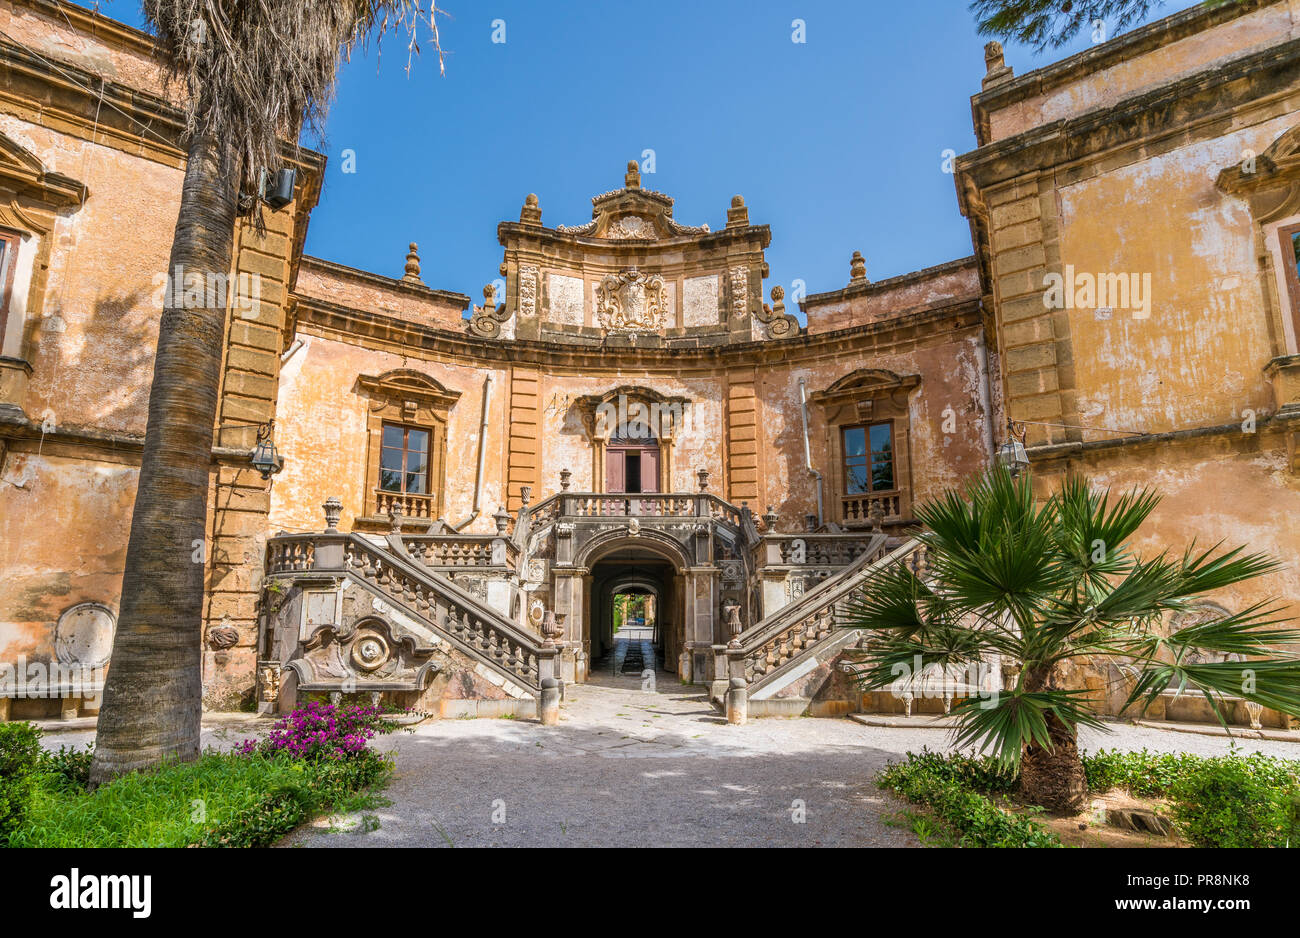 La bellissima Villa Palagonia di Bagheria, nei pressi di Palermo. Sicilia, Italia. Foto Stock